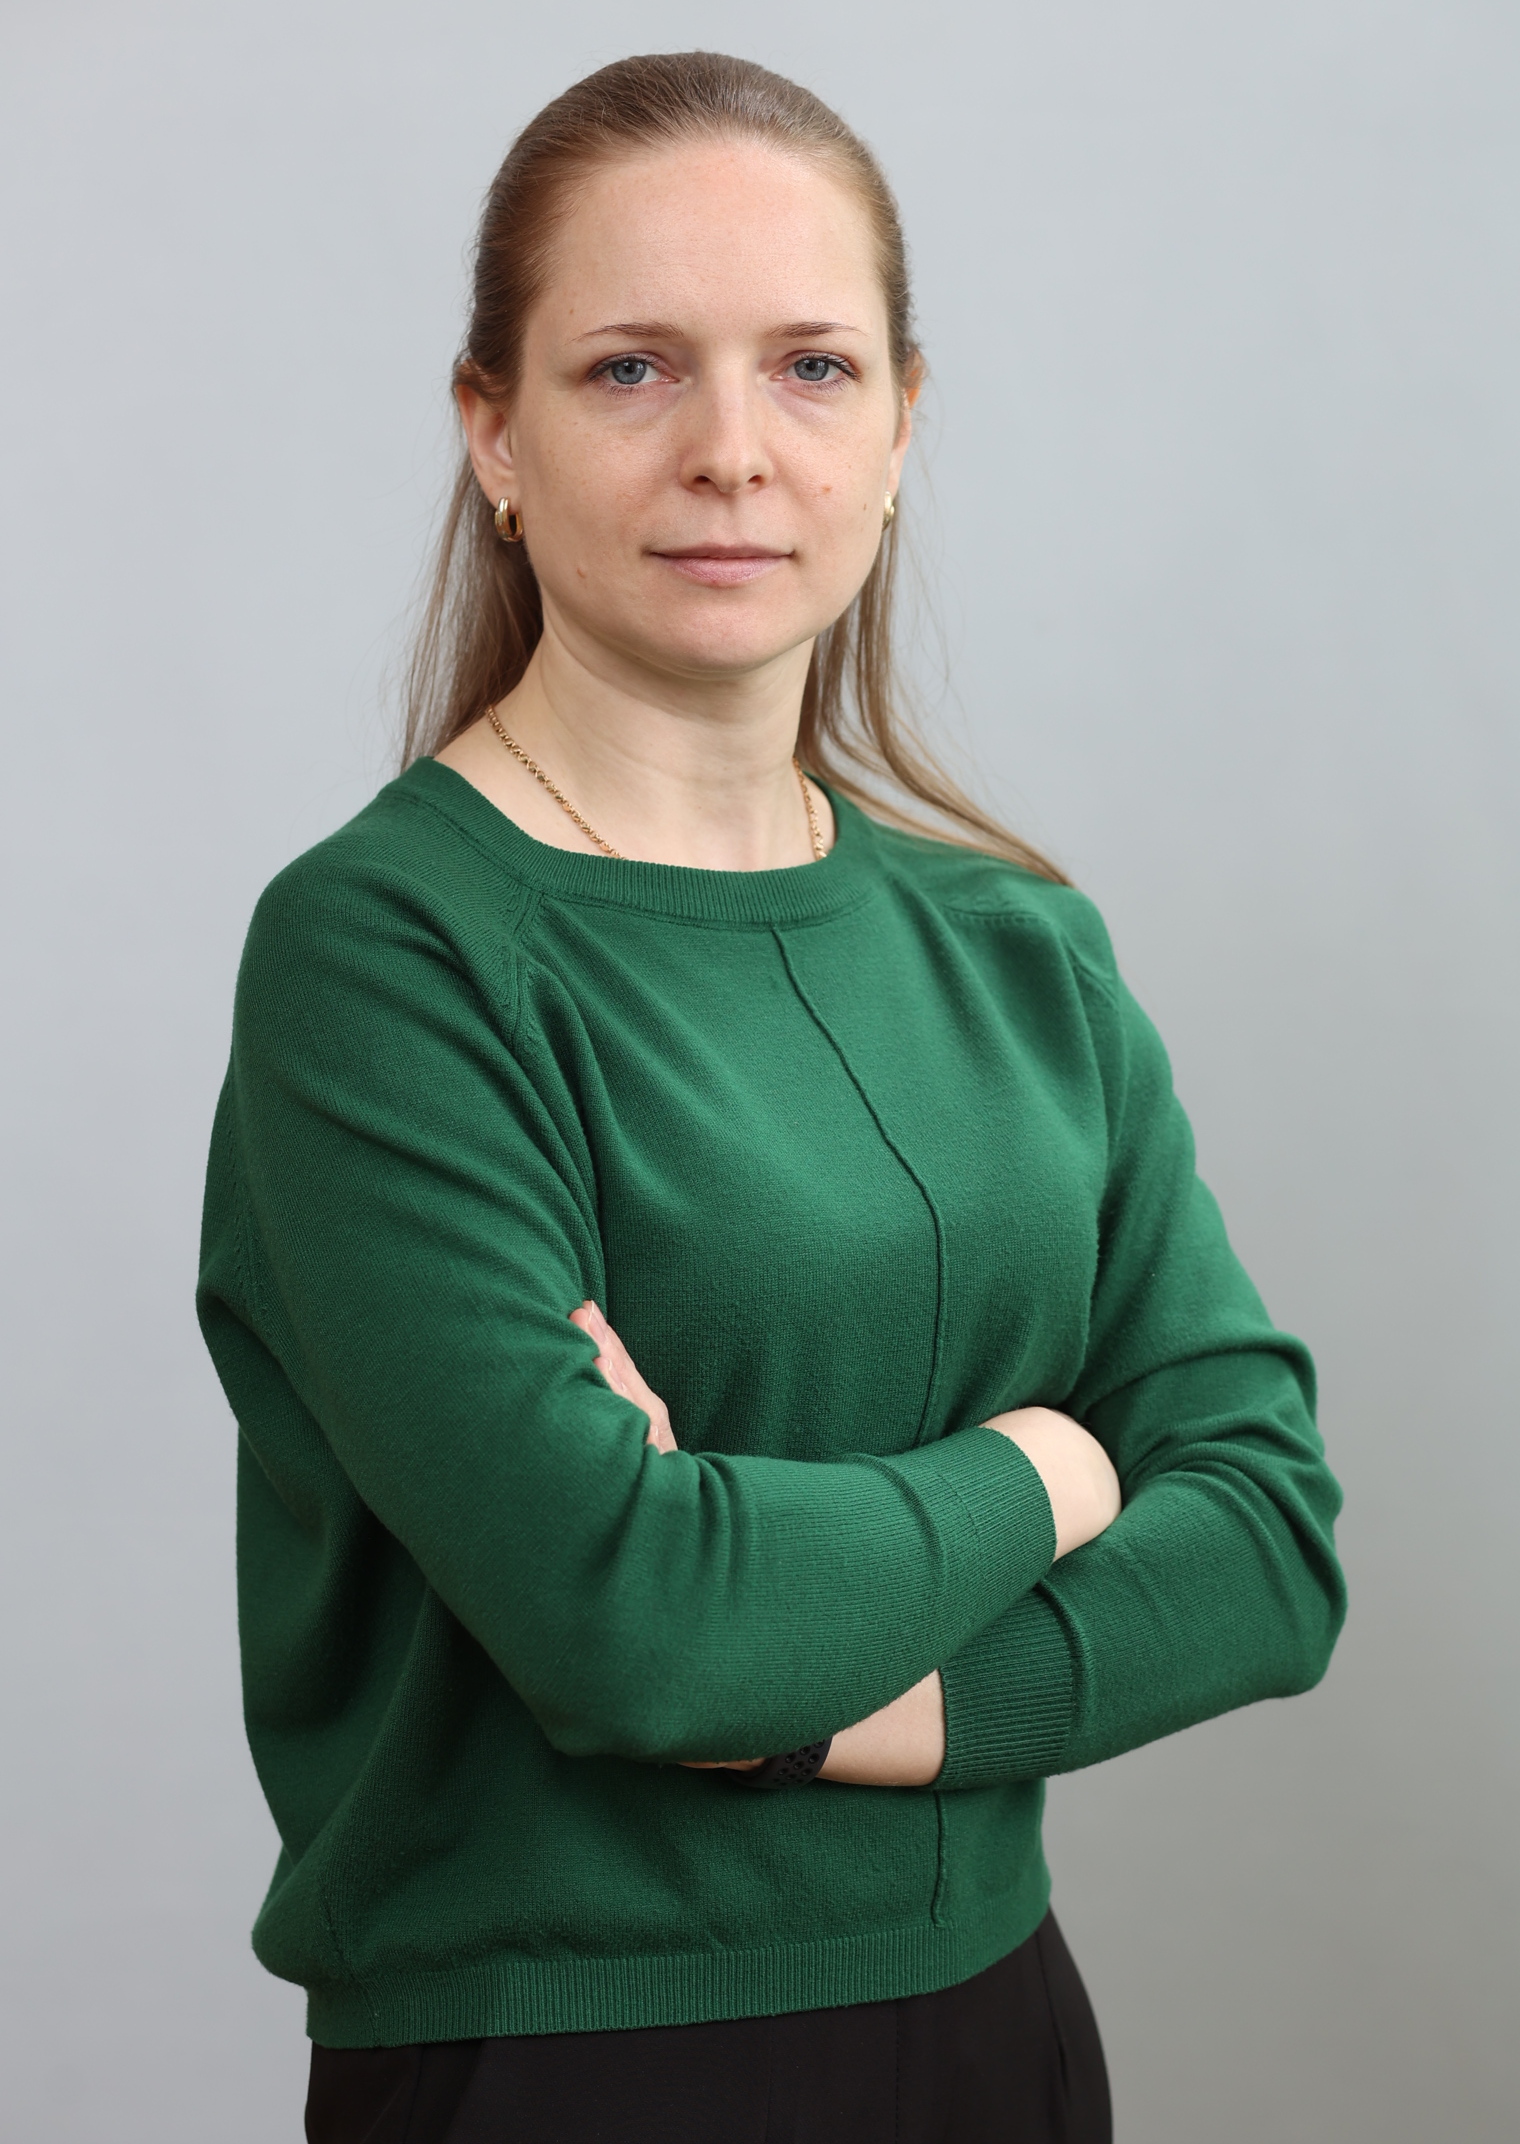 Мальцева Наталья Геннадьевна.